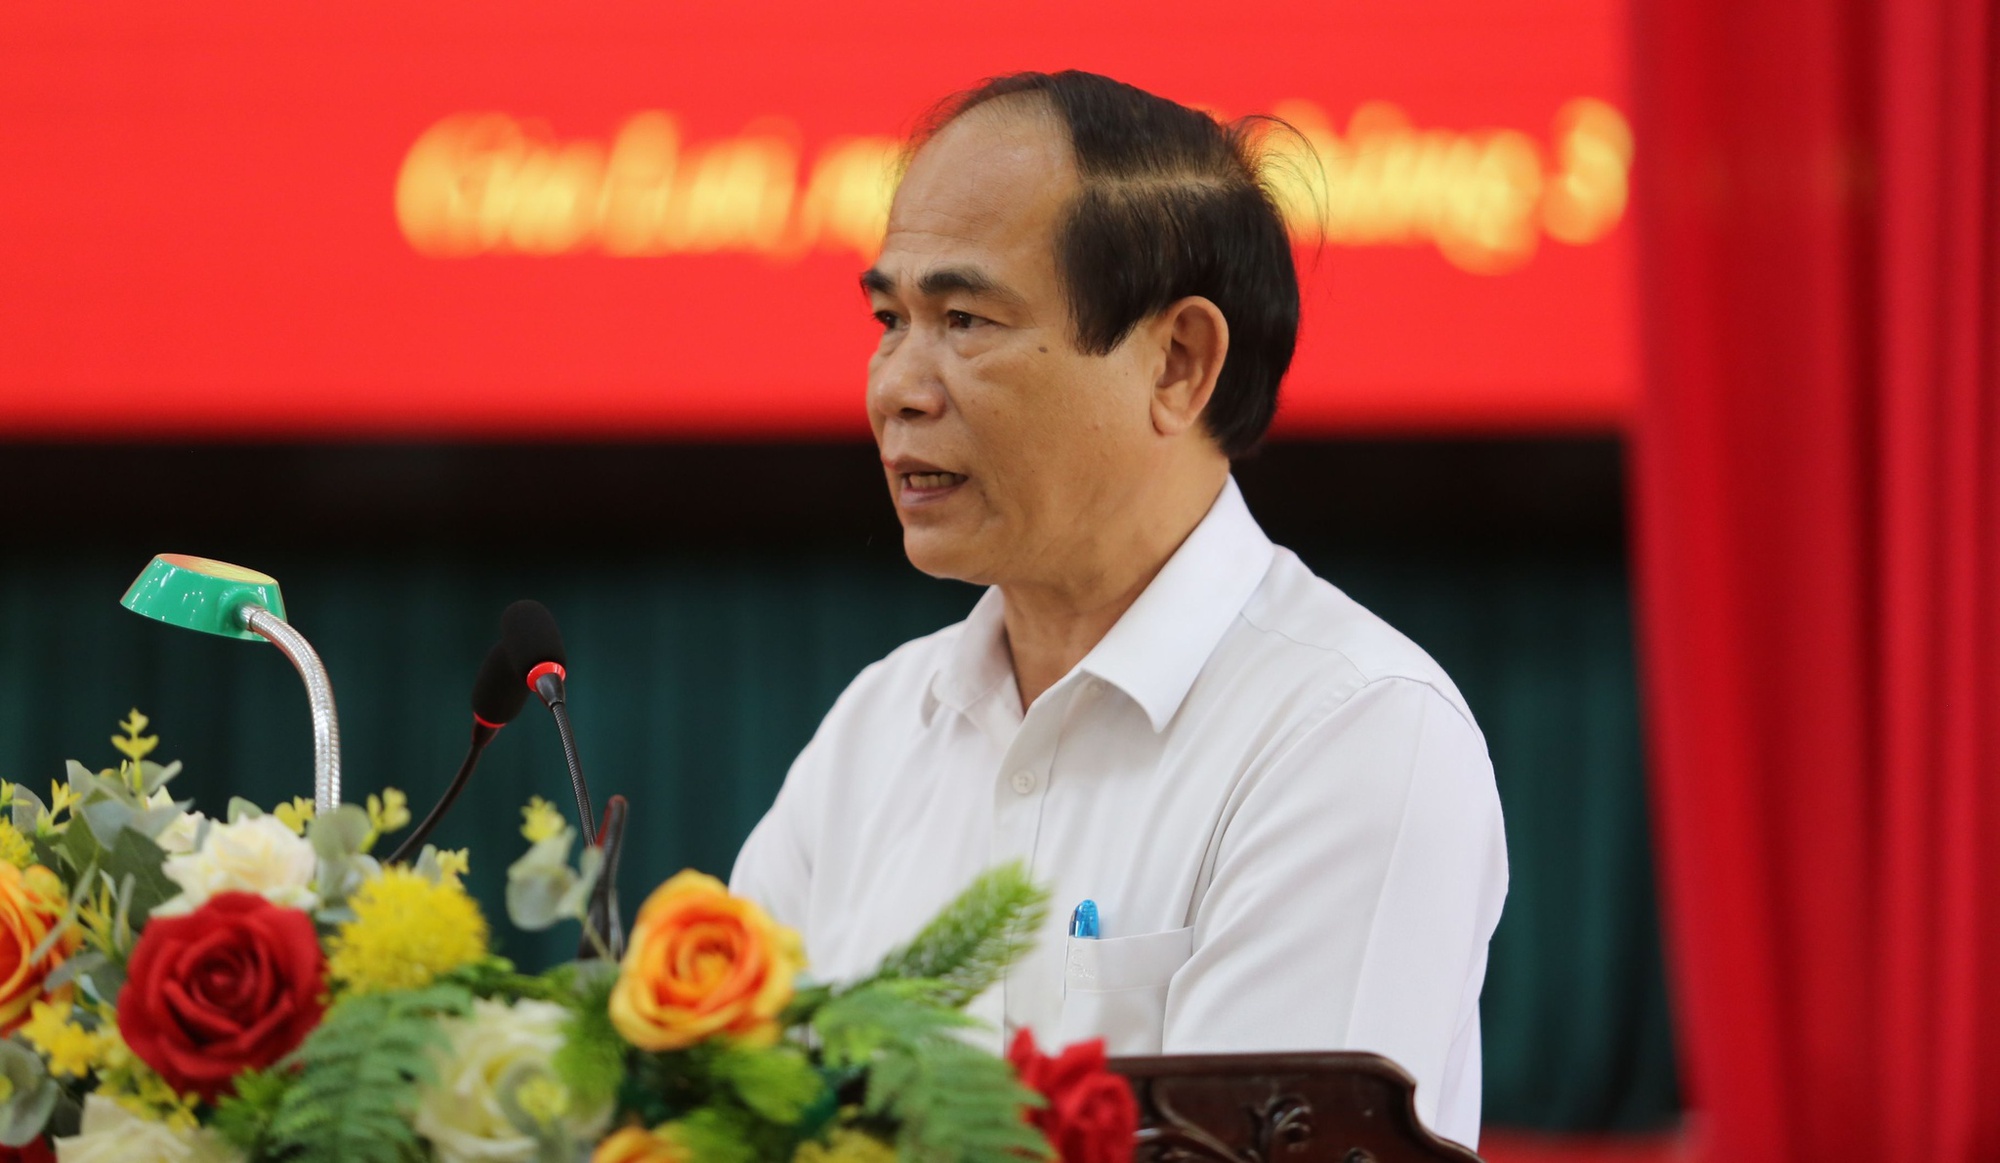 Sau kỷ luật Đảng, Chủ tịch tỉnh Gia Lai Võ Ngọc Thành sẽ bị cách chức về chính quyền? - Ảnh 1.